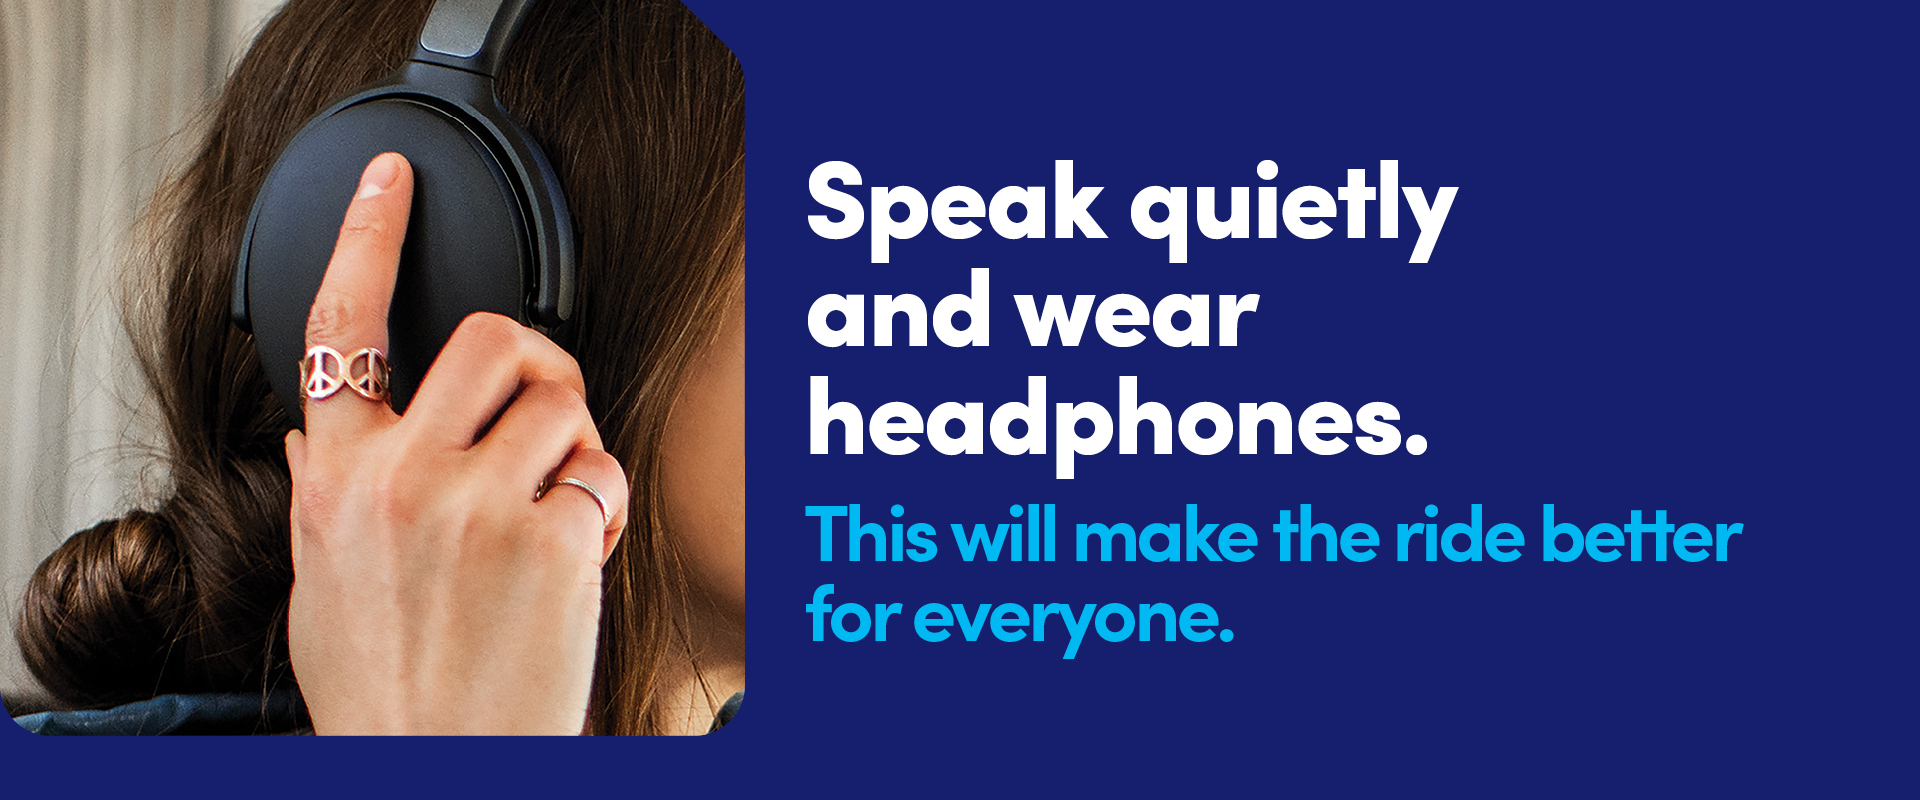 Speak quietly and wear headphones